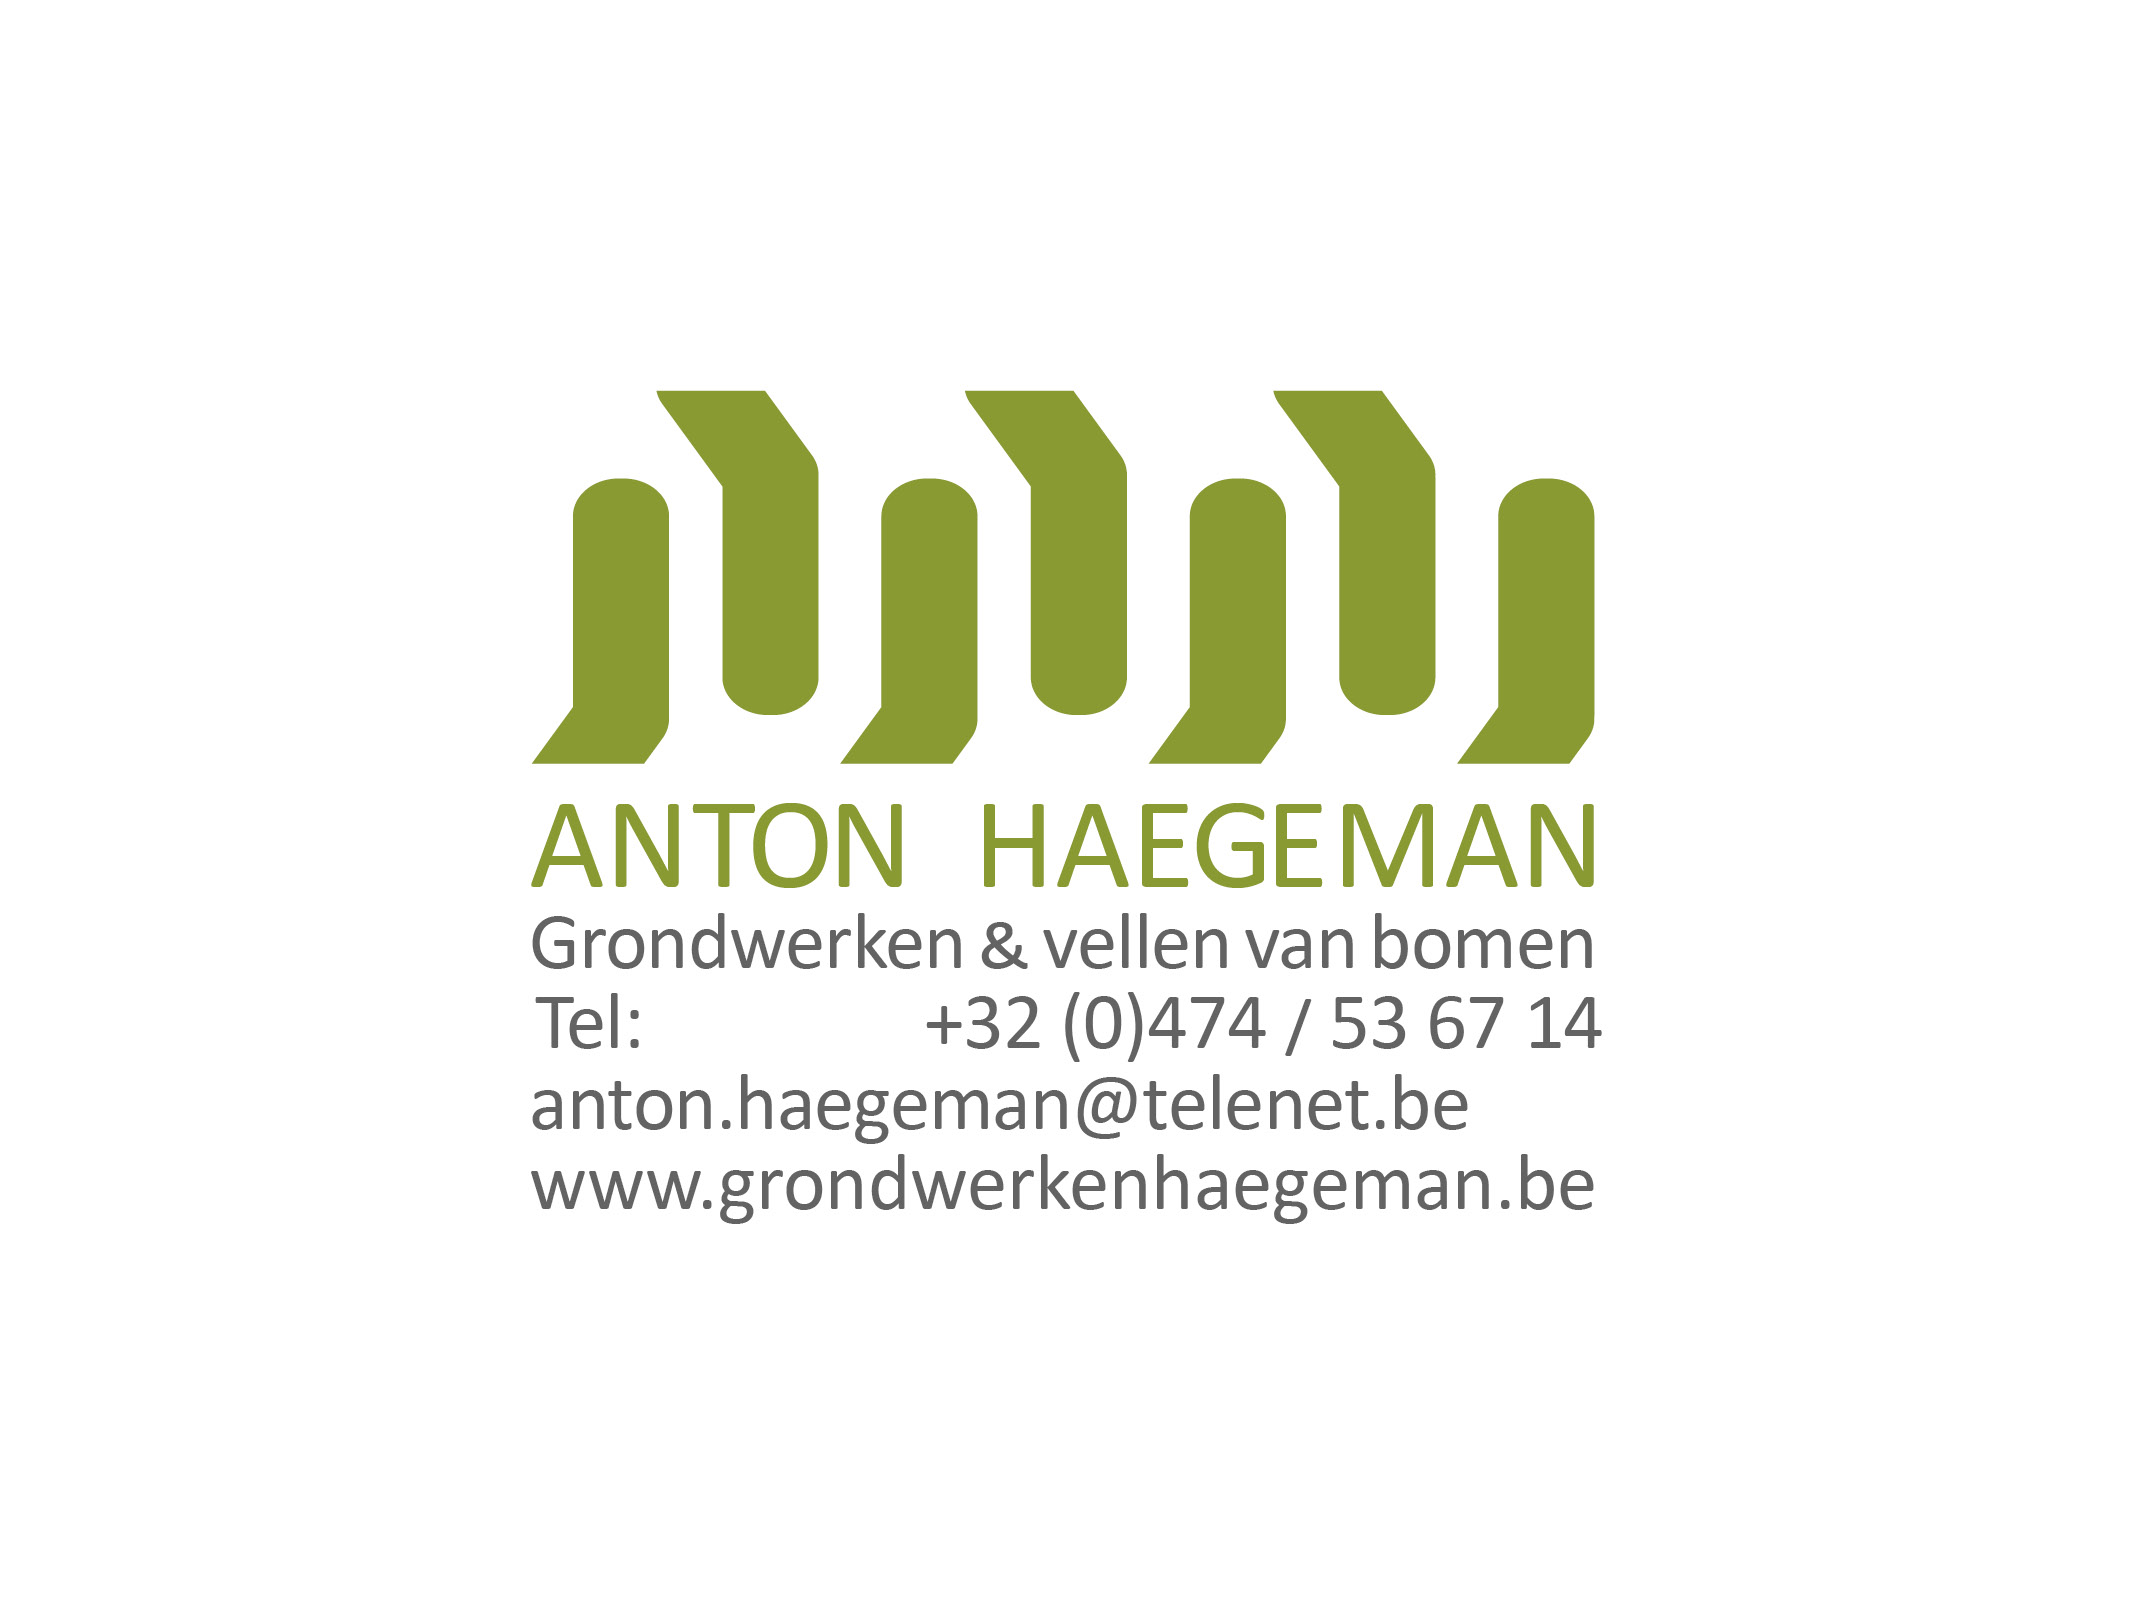 grondwerken & vellen van bomen Anton Haegeman